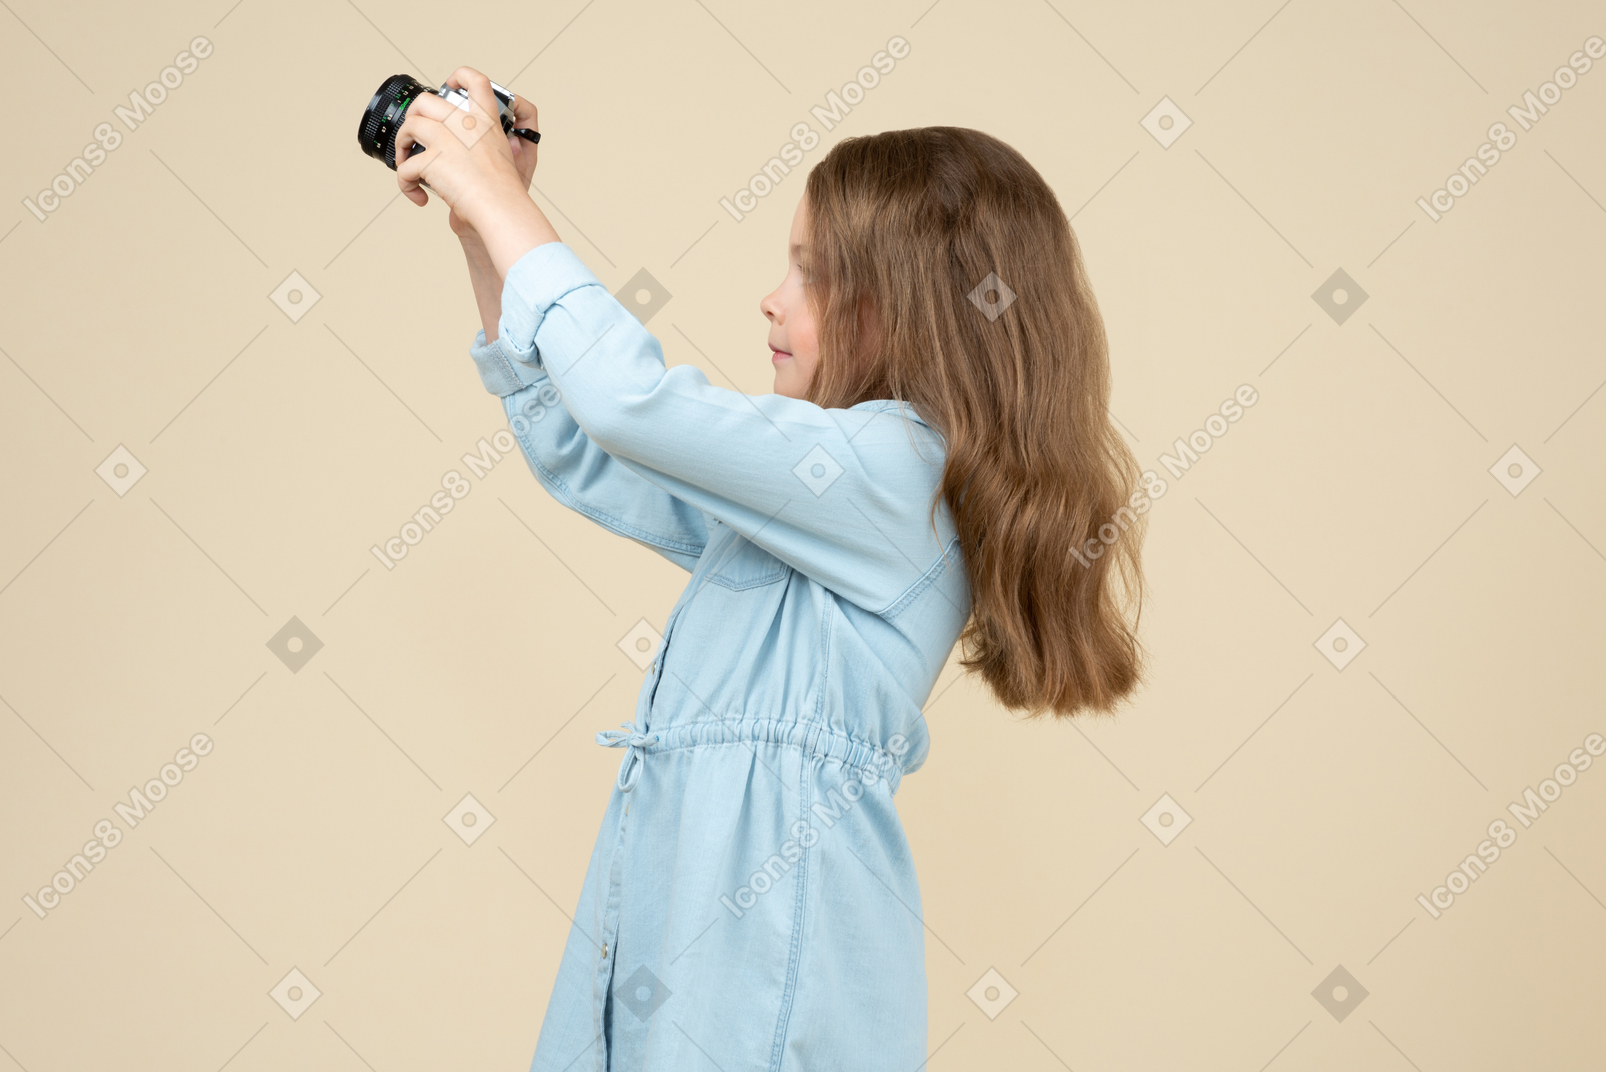 Jolie petite fille tenant un appareil photo